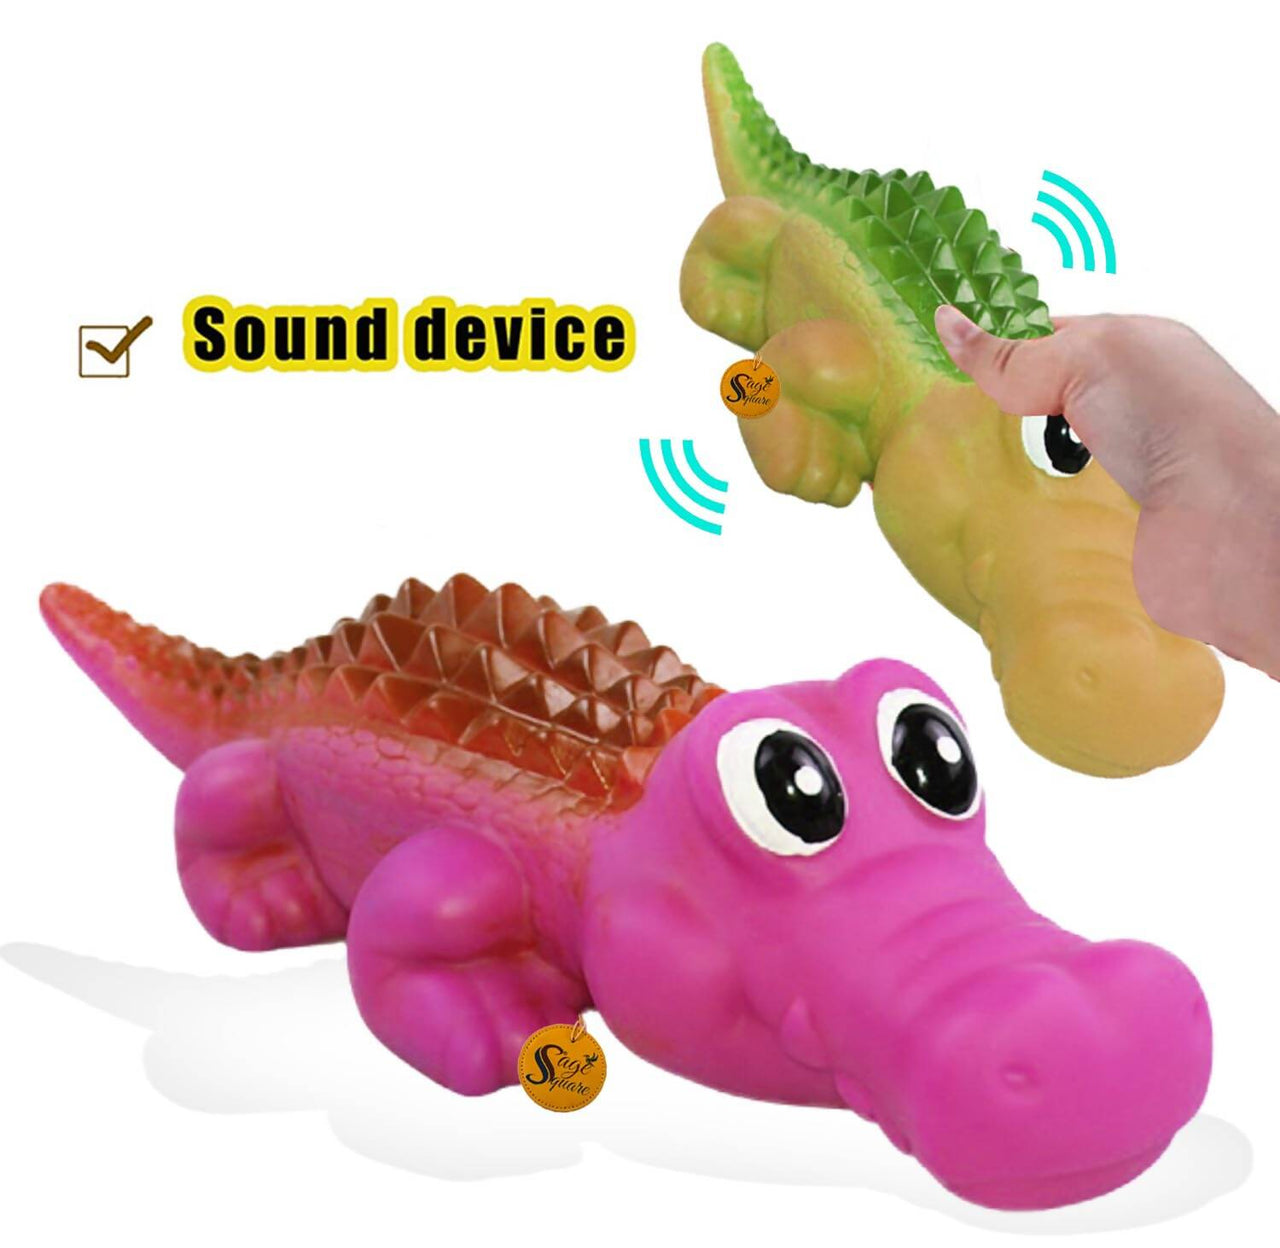 Sage Square Durable Interactive Dog Squeaky Crocodile Toy (Random Color) - Distacart